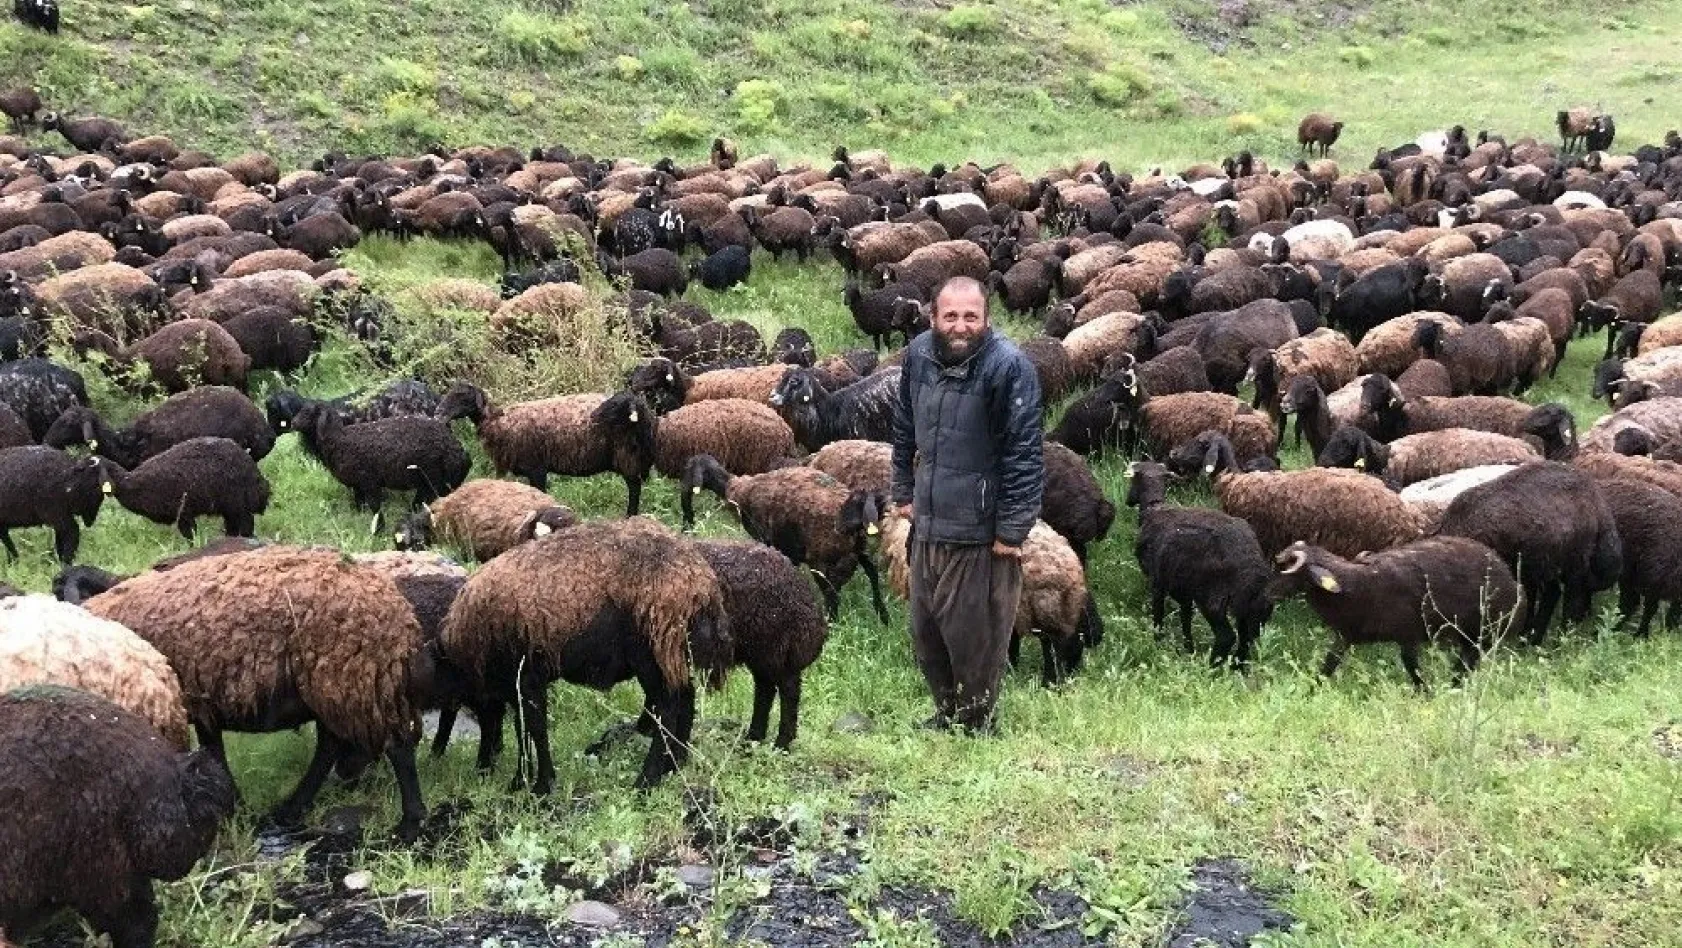 Çobanlar koyun sürüsüyle doluya tutuldu
